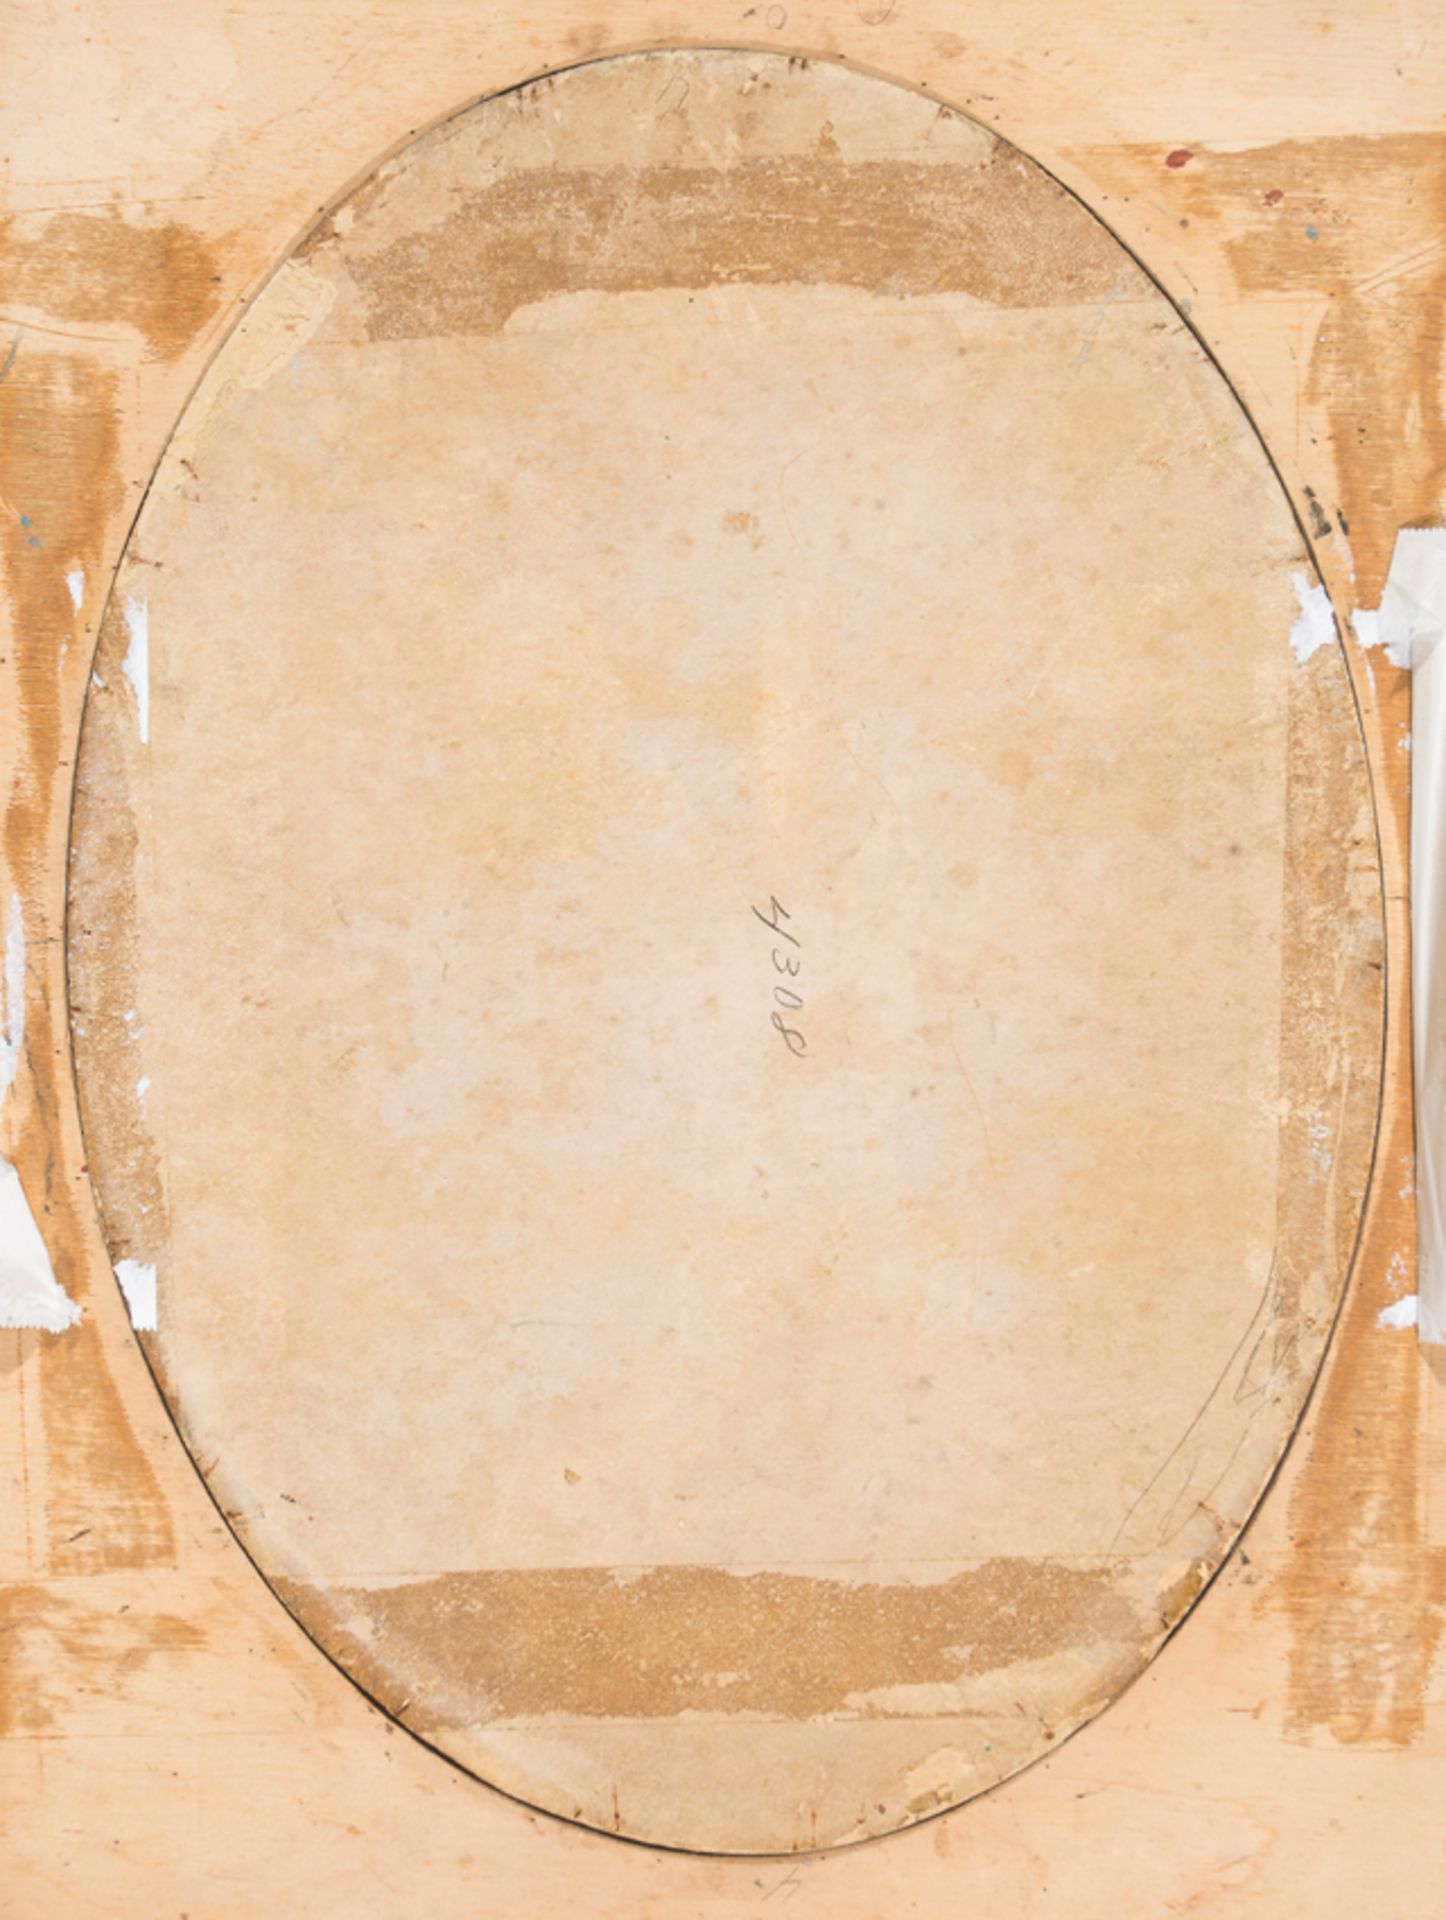 Attributed to José Campeche y Jordán (San Juan, Puerto Rico, 1751 - 1809) - Image 9 of 9